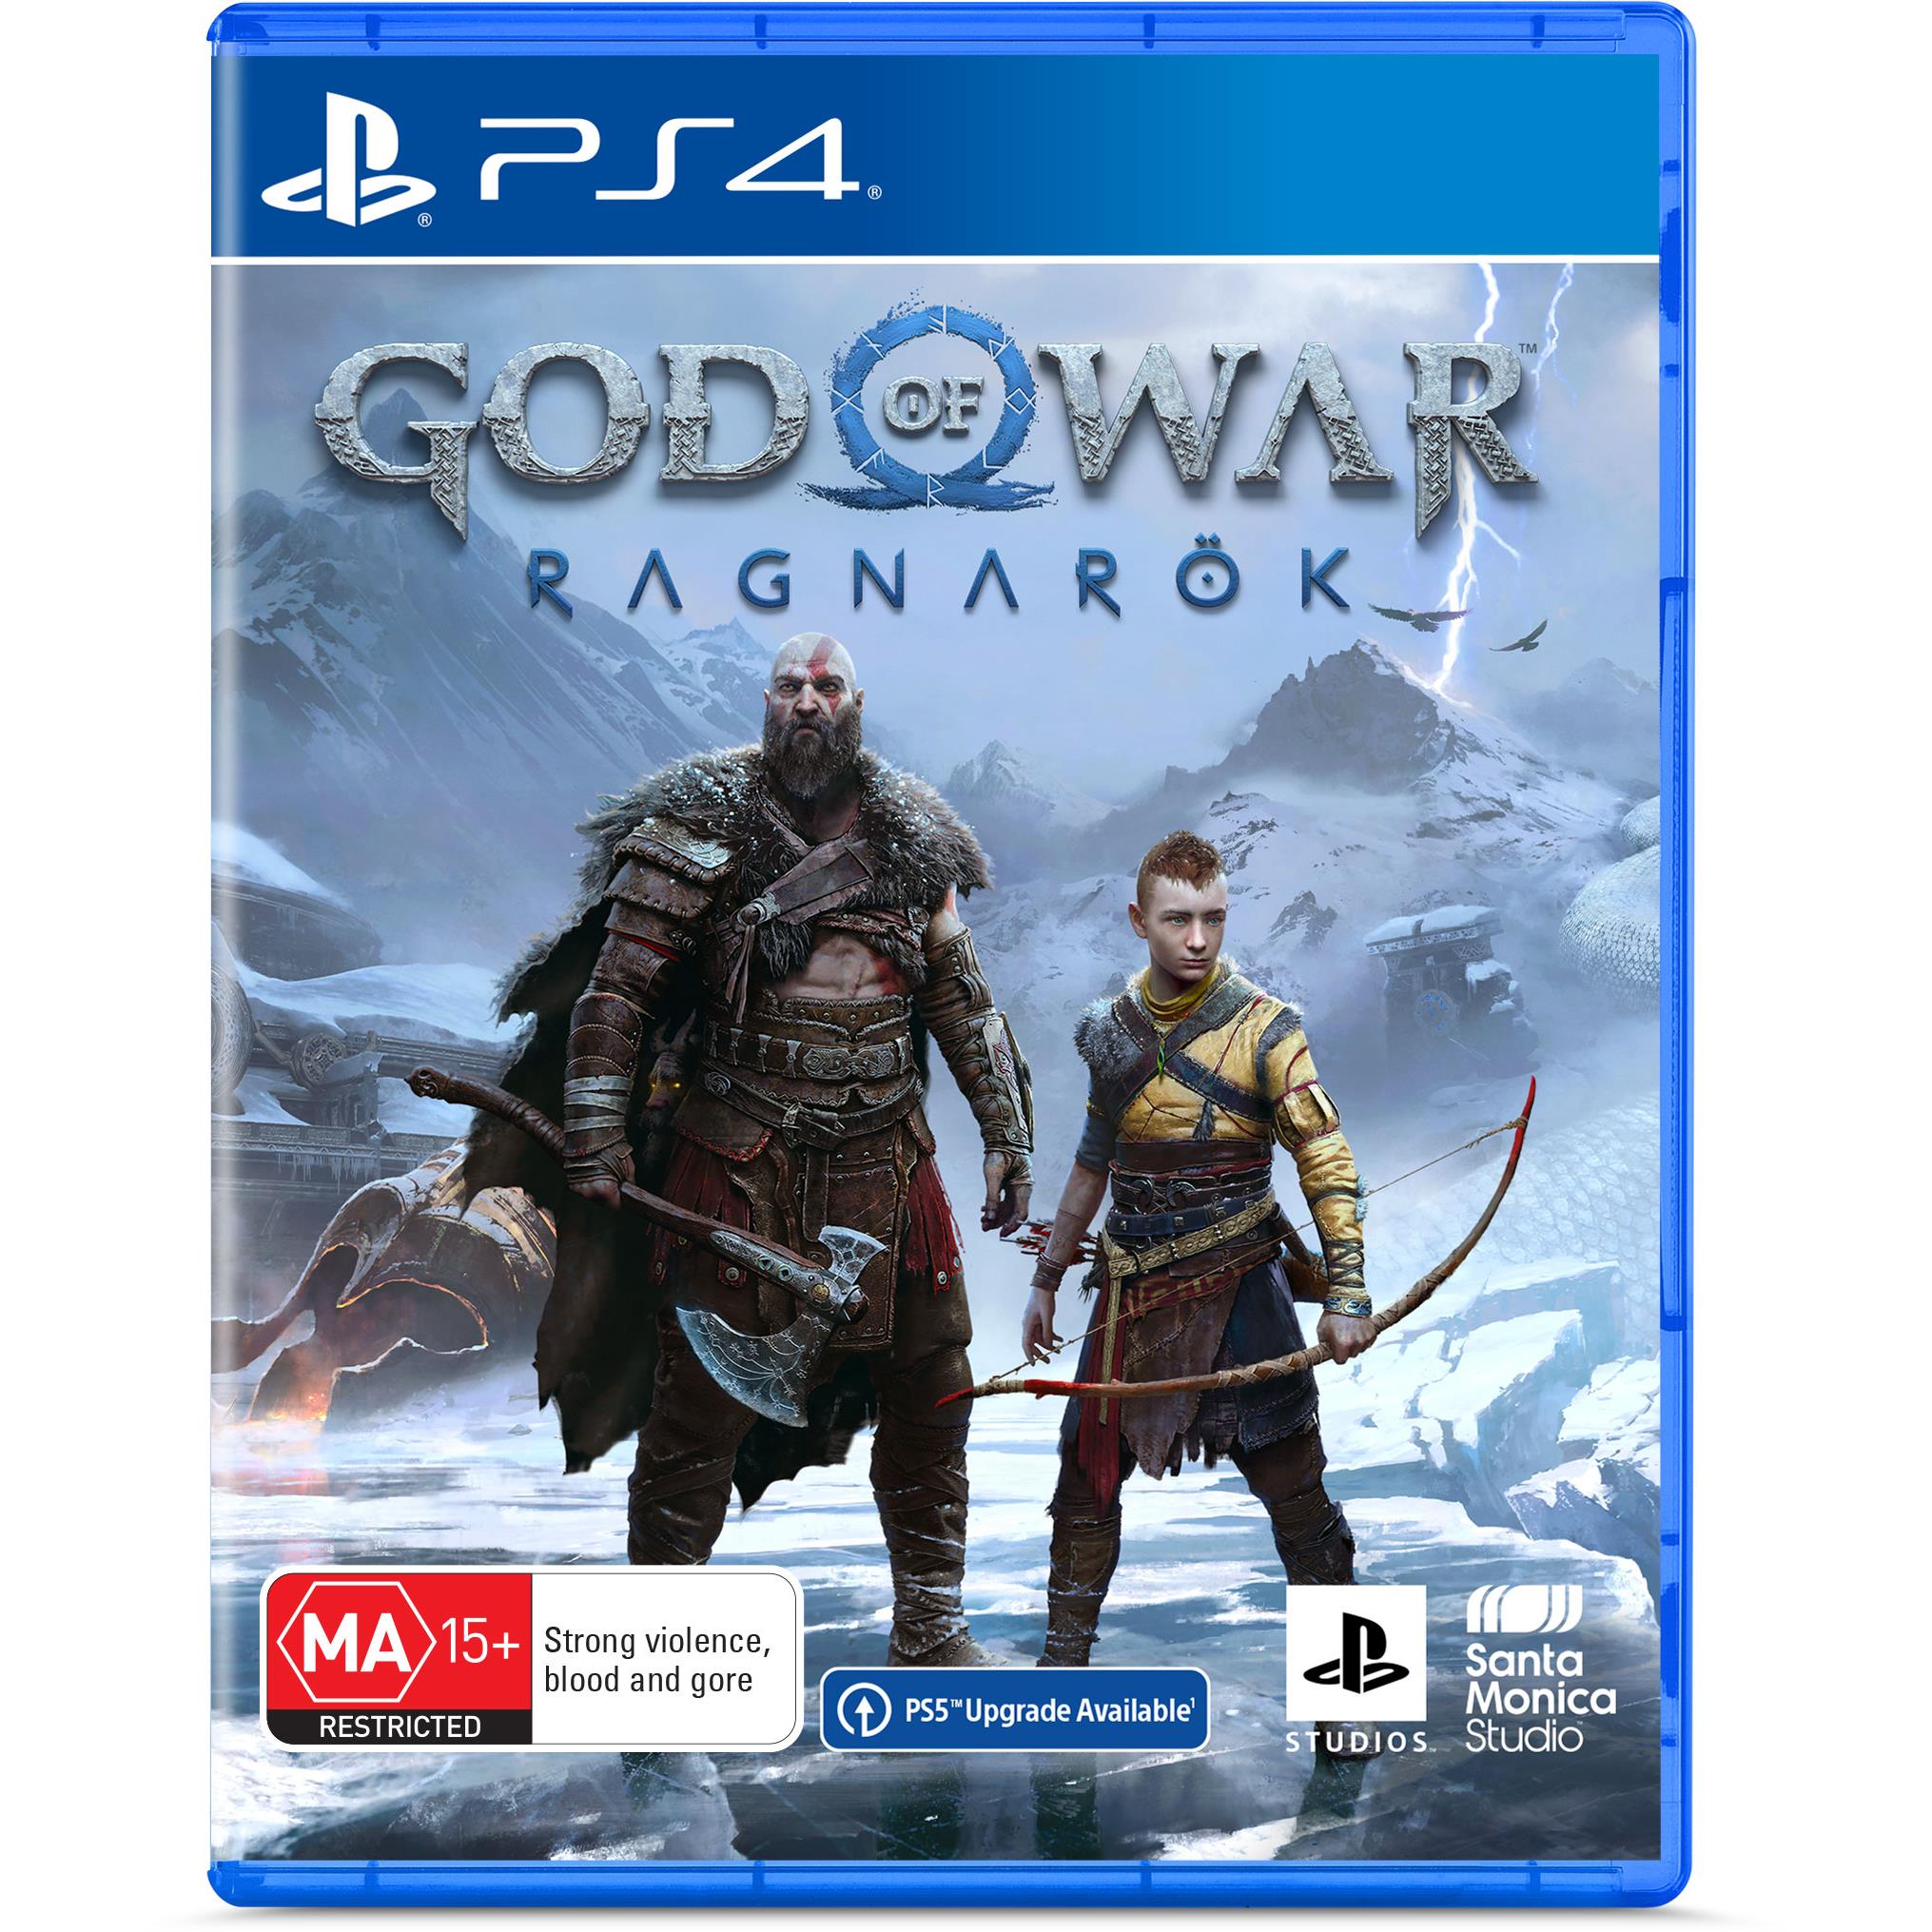 GOD OF WAR RAGNAROK PC CONFIRMED🔥, RELEASE DATE STEAM & EPIC GAMES